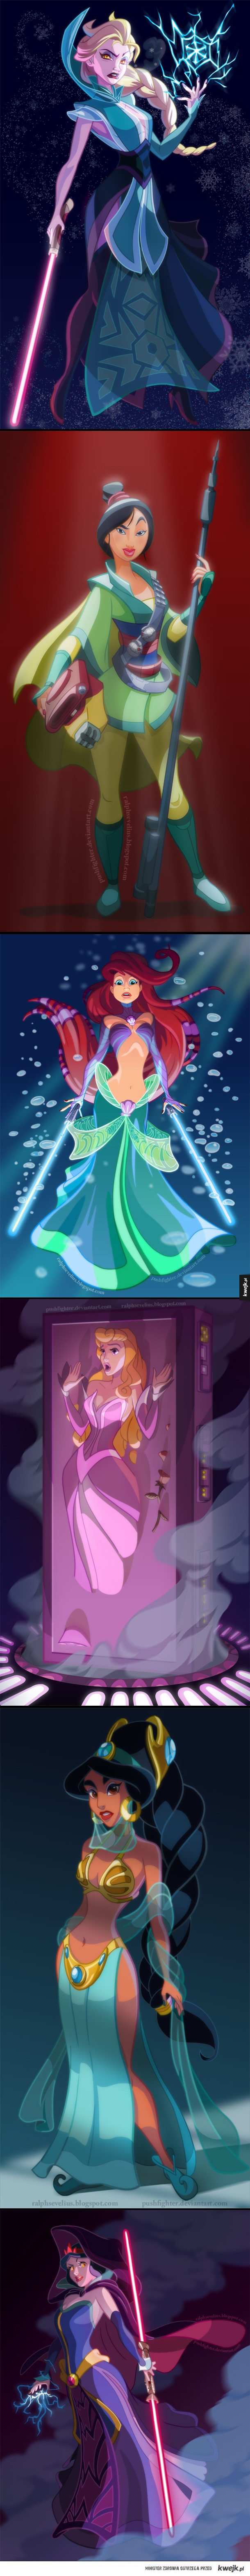 Księżniczki Disneya jako postacie z Gwiezdnych wojen